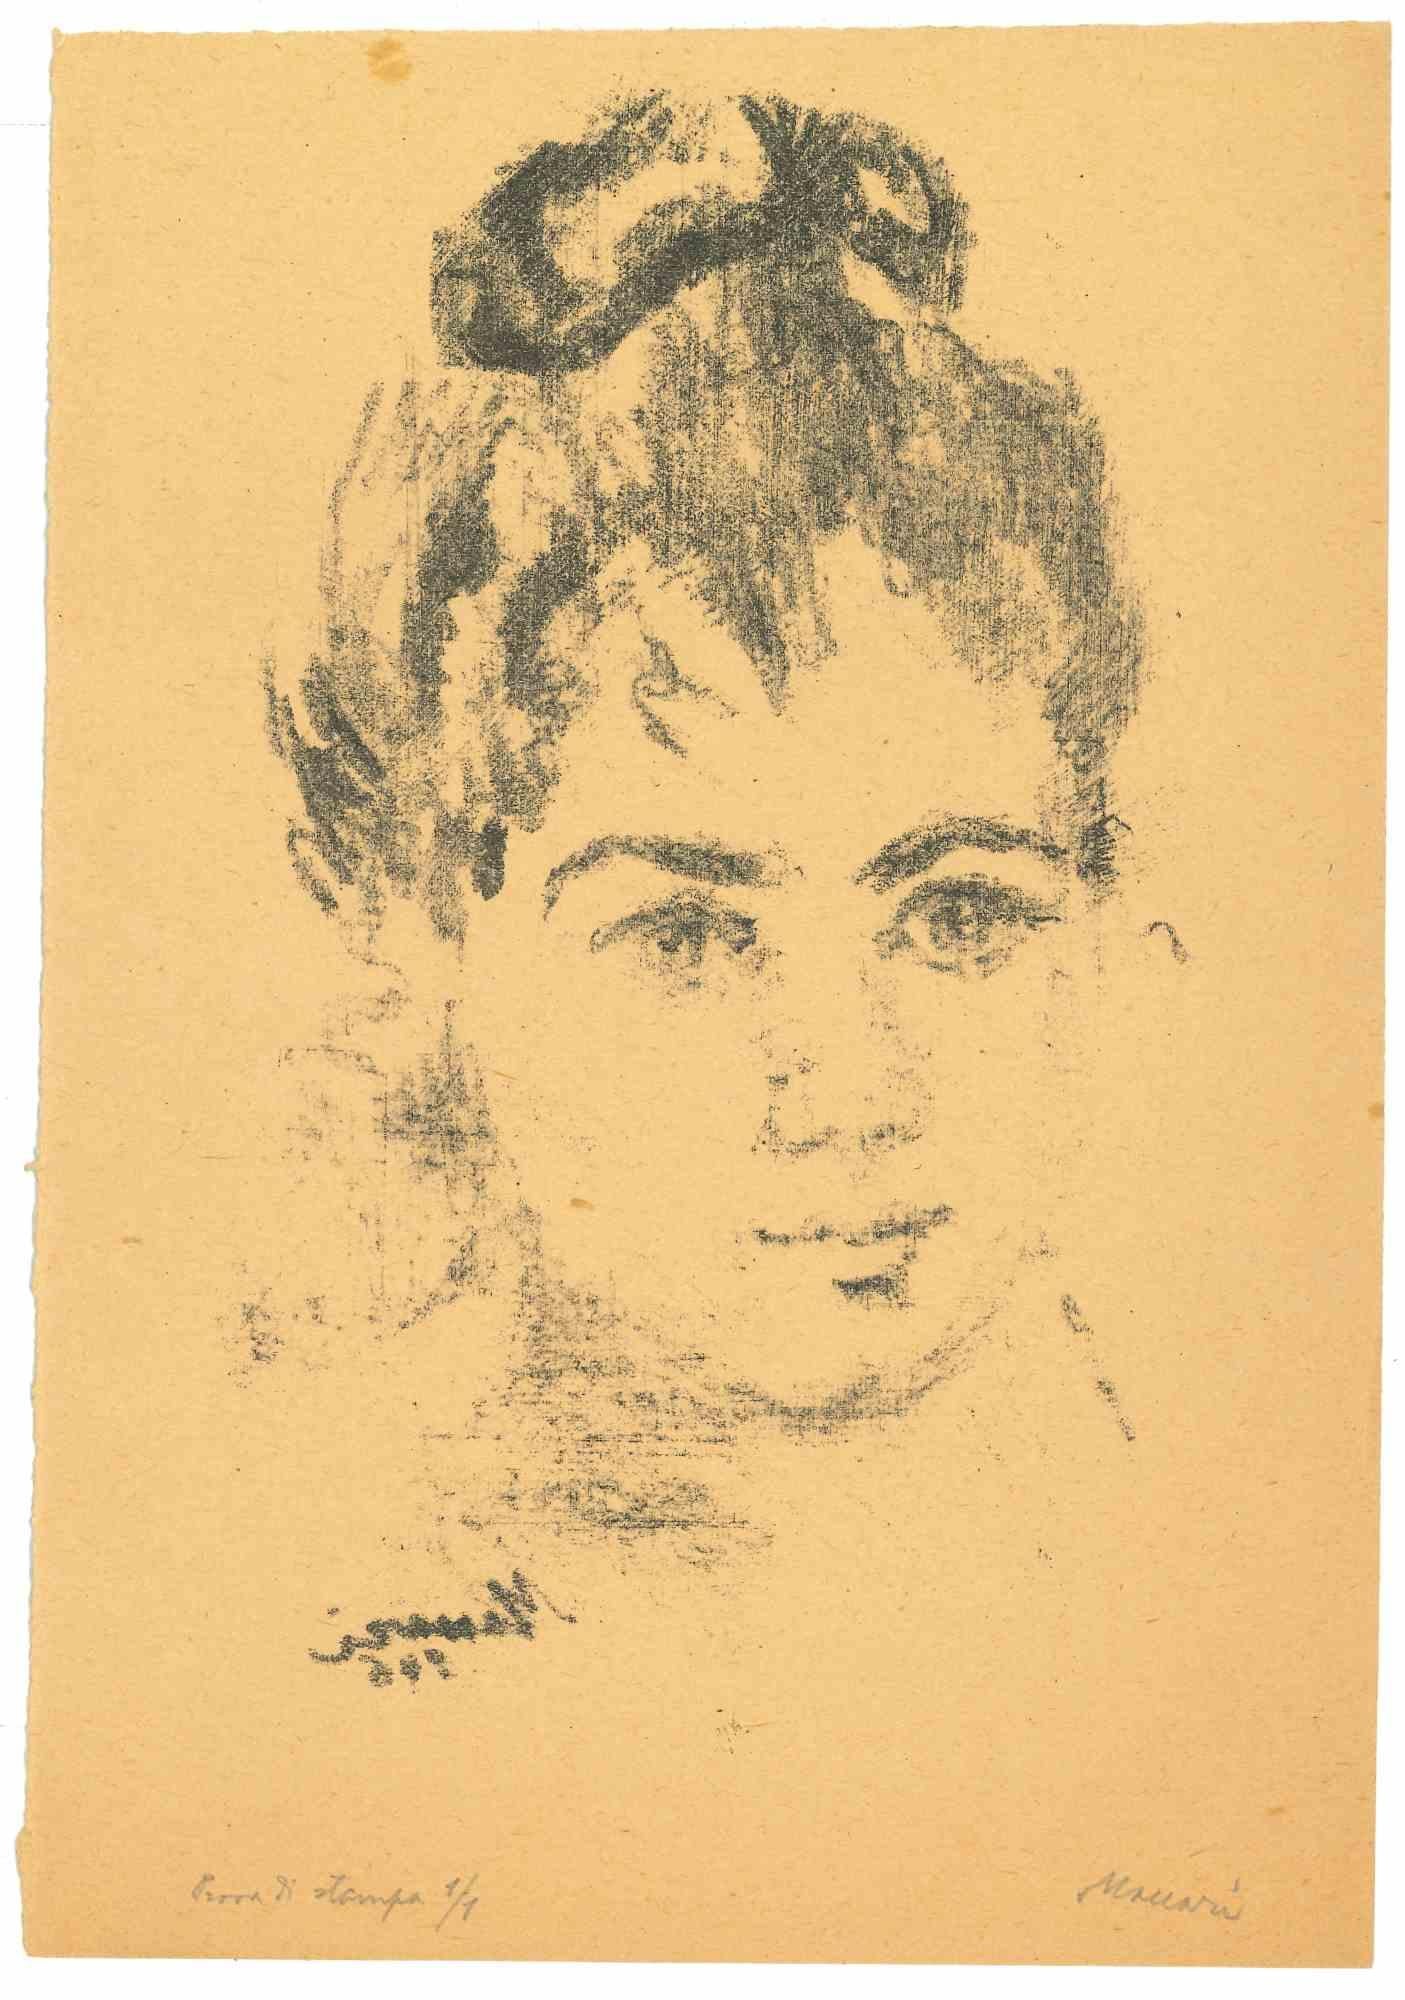 Portrait -  Lithograph by Mino Maccari - 1946